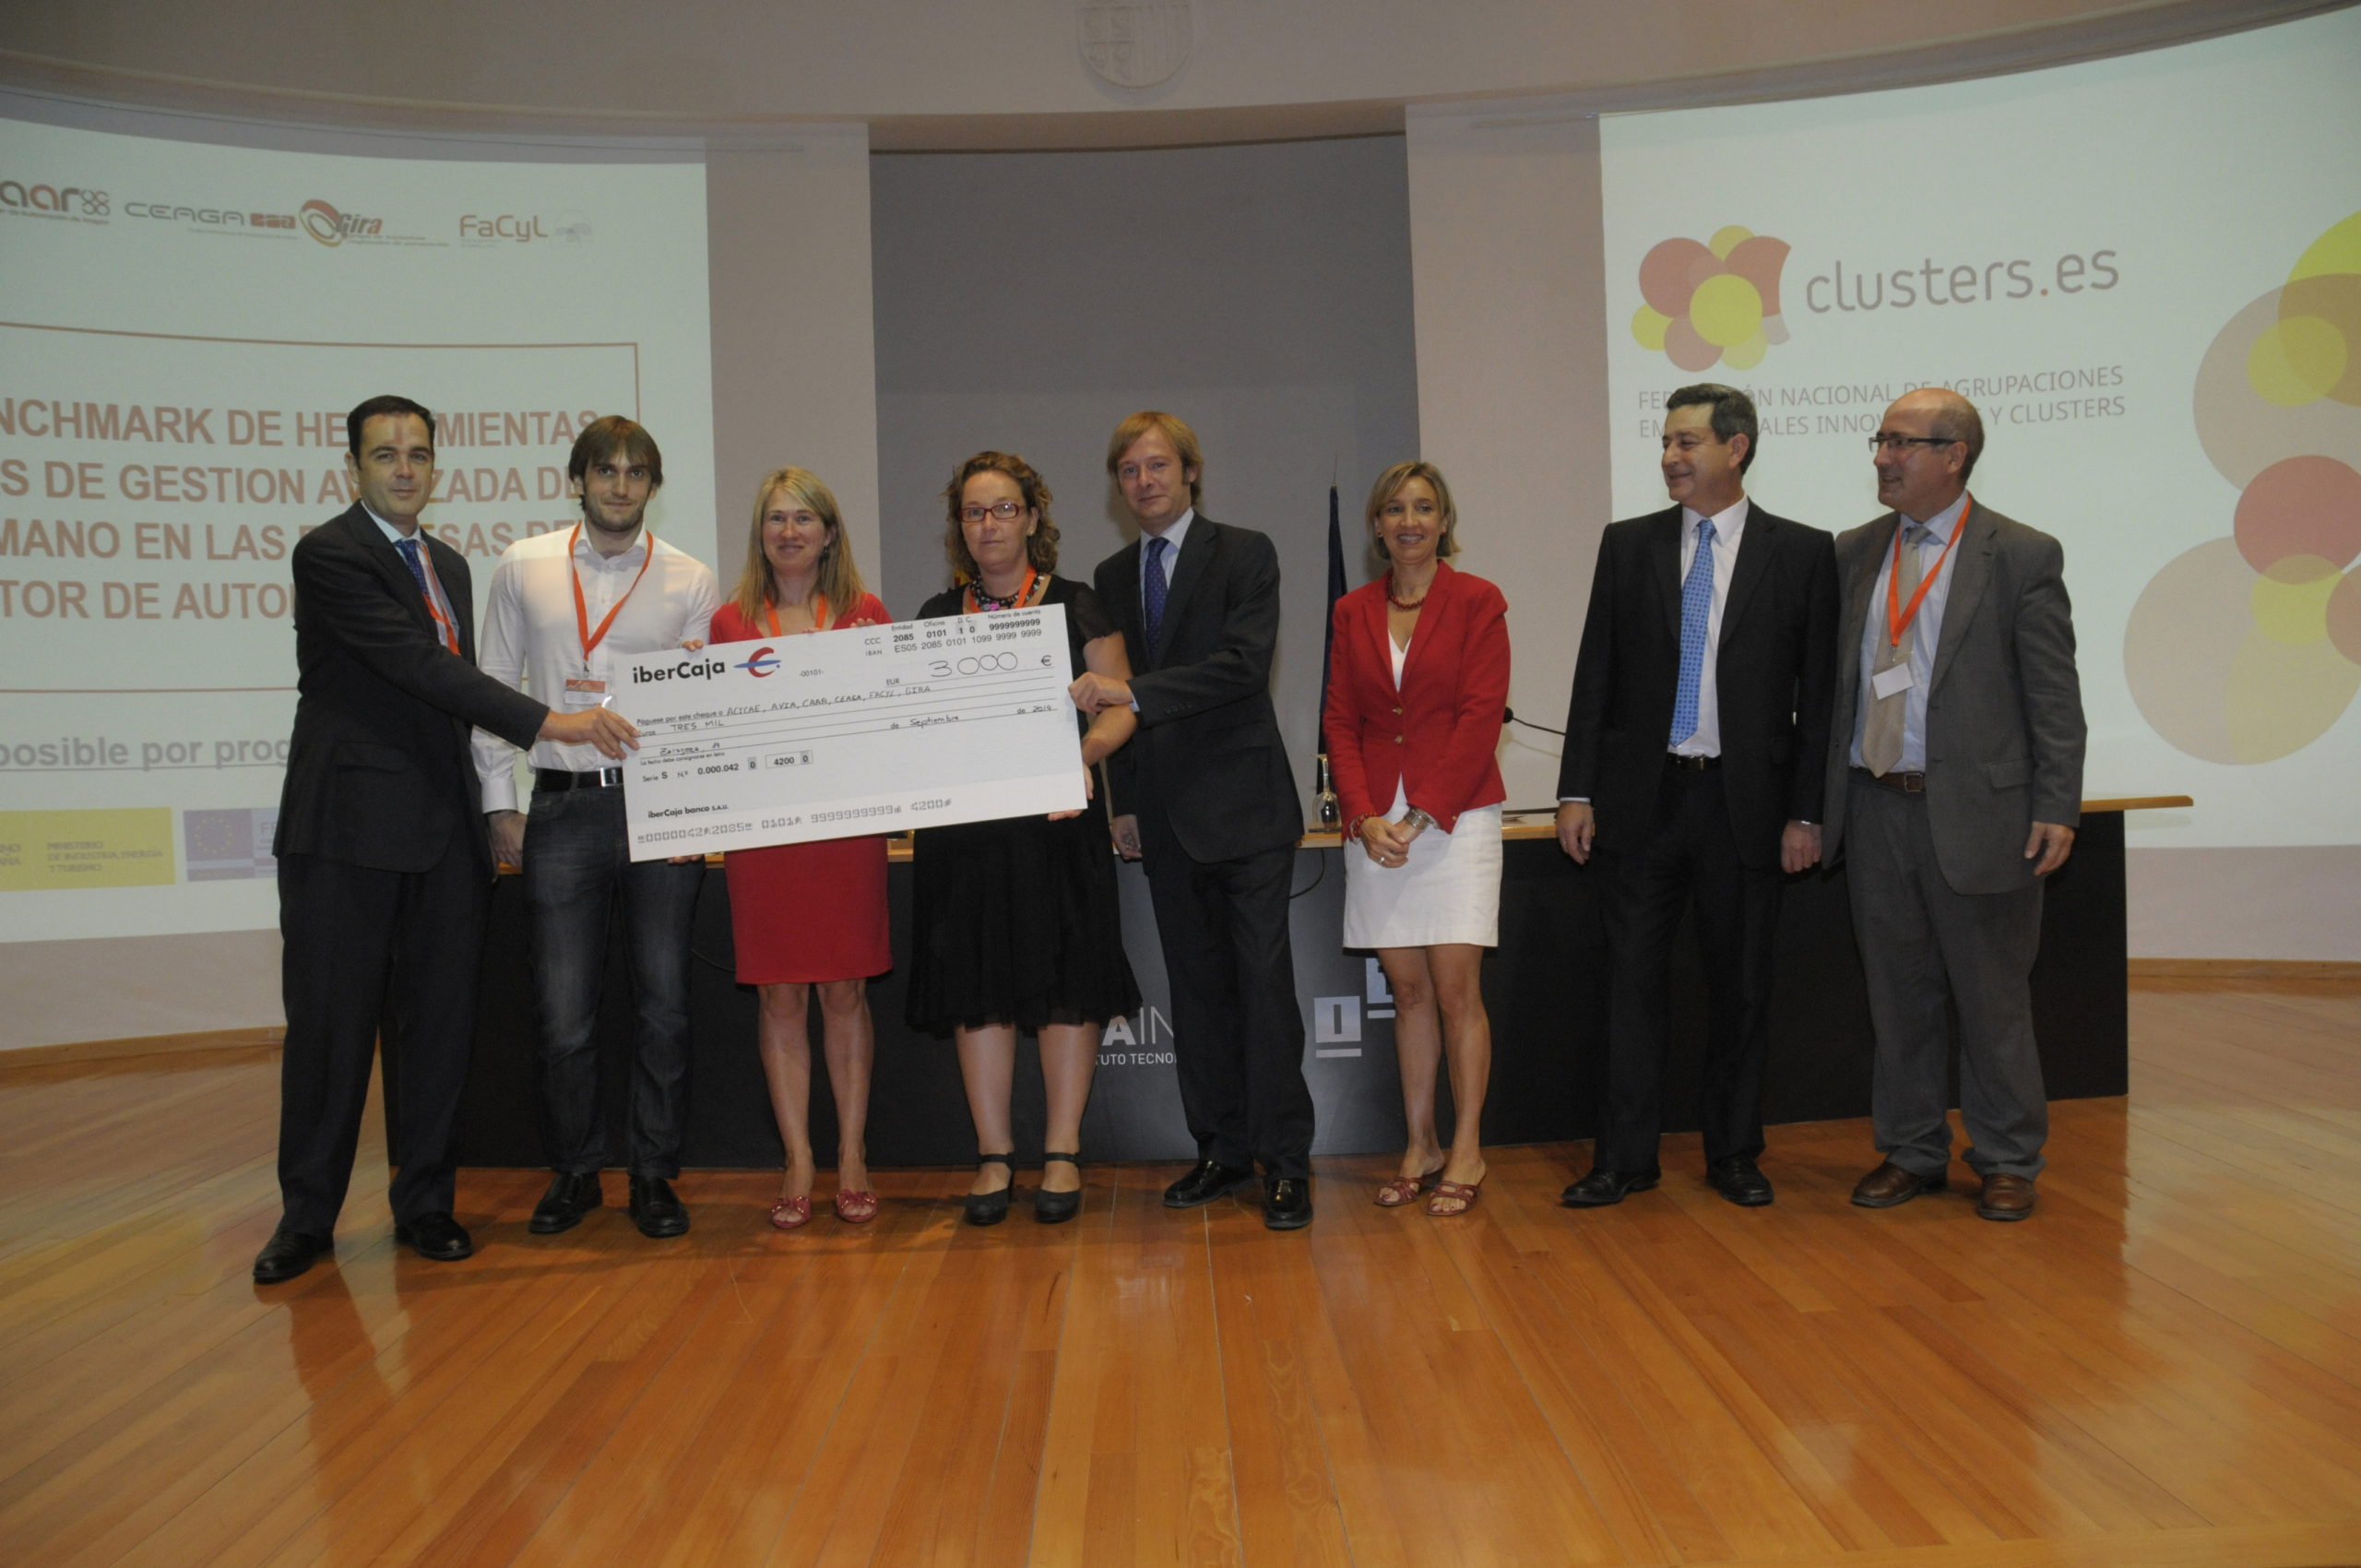 Representantes de los clusters españoles recogiendo el premio Ibercaja 2014 de colaboración.